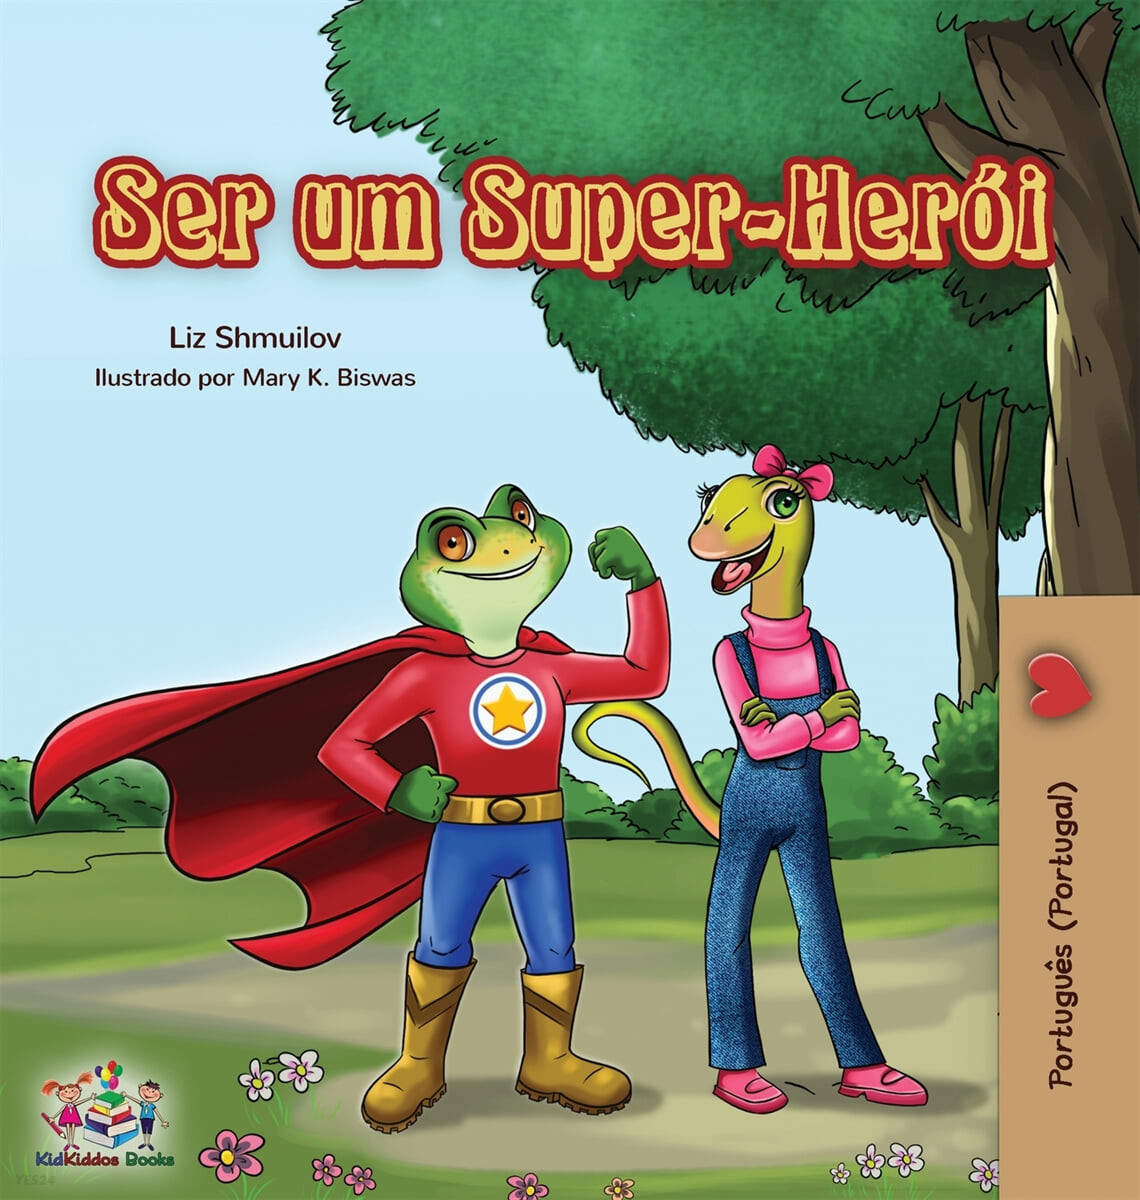 Ser um Super-Her?i: Being a Superhero (Portuguese - Portugal)